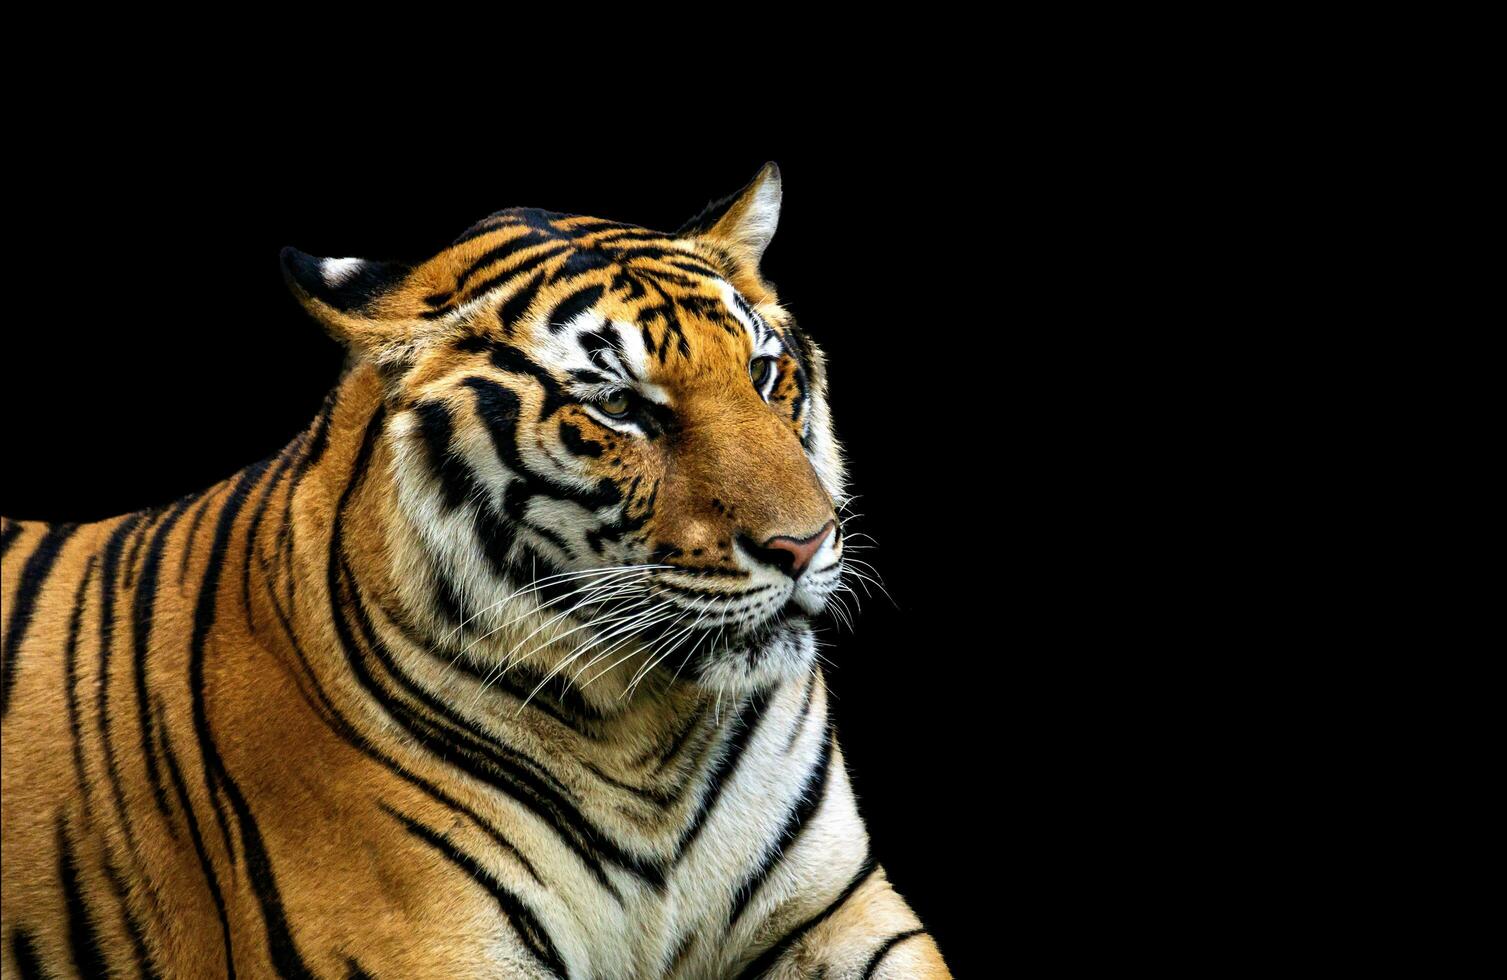 asiatisch Tiger Das sind gefunden im Thailand foto